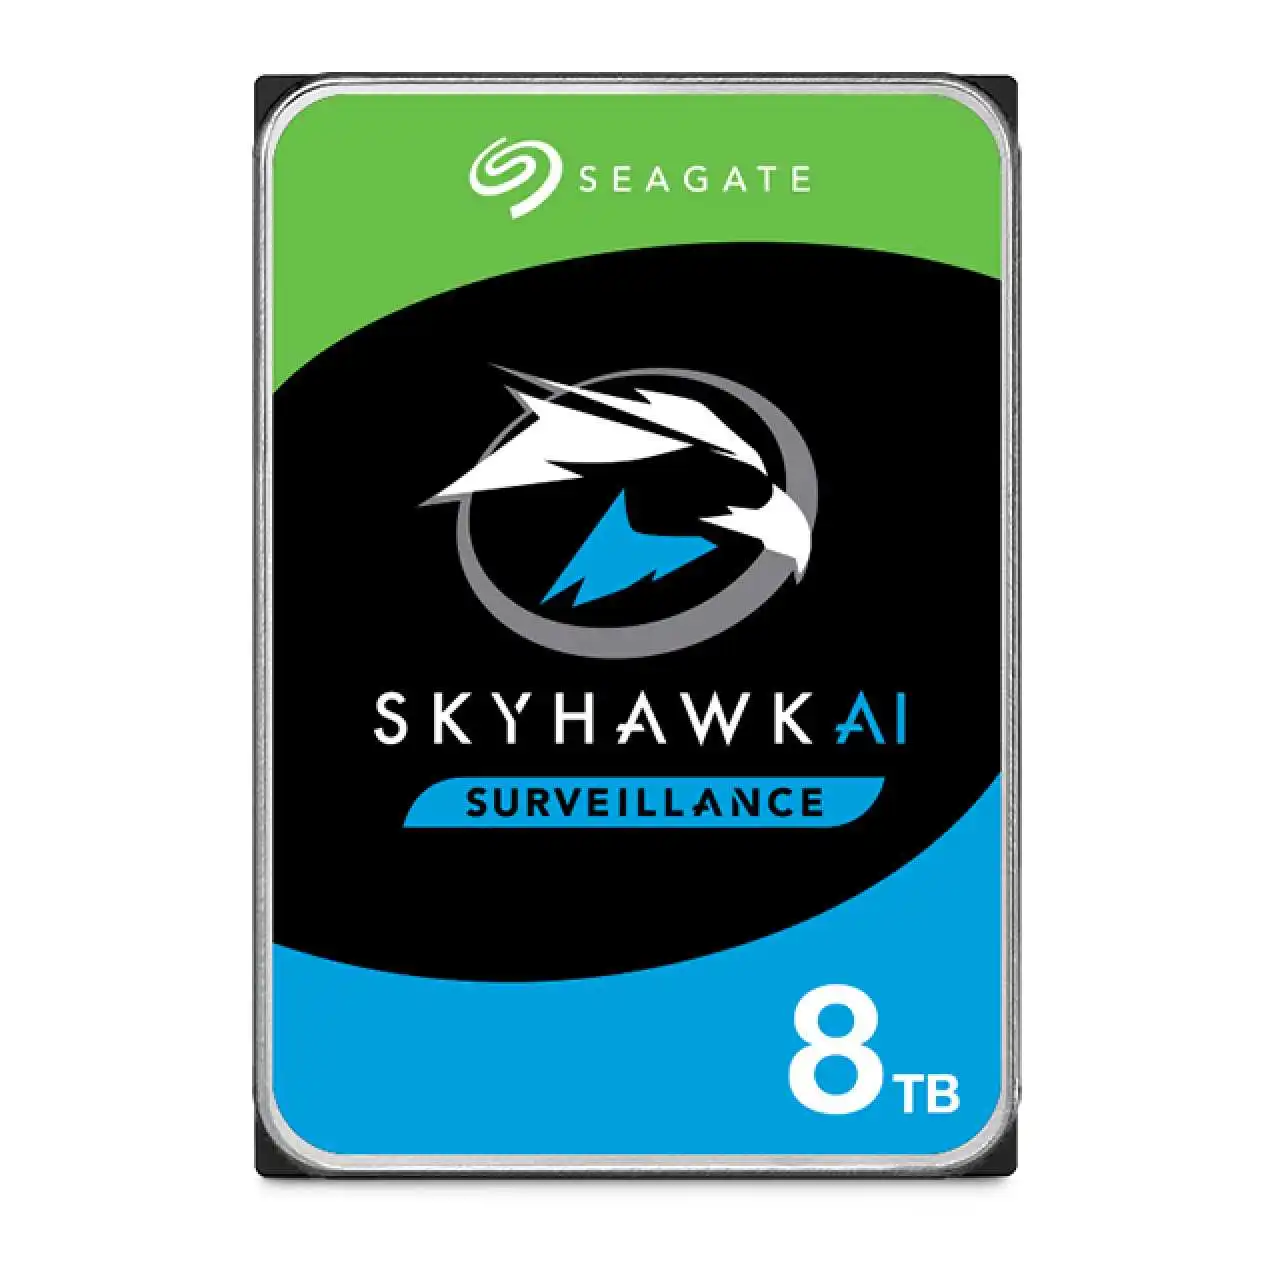 8tb-seagate-skyhawk-aI-256mb-7-24-rv-st8000ve001-ürün-resmi